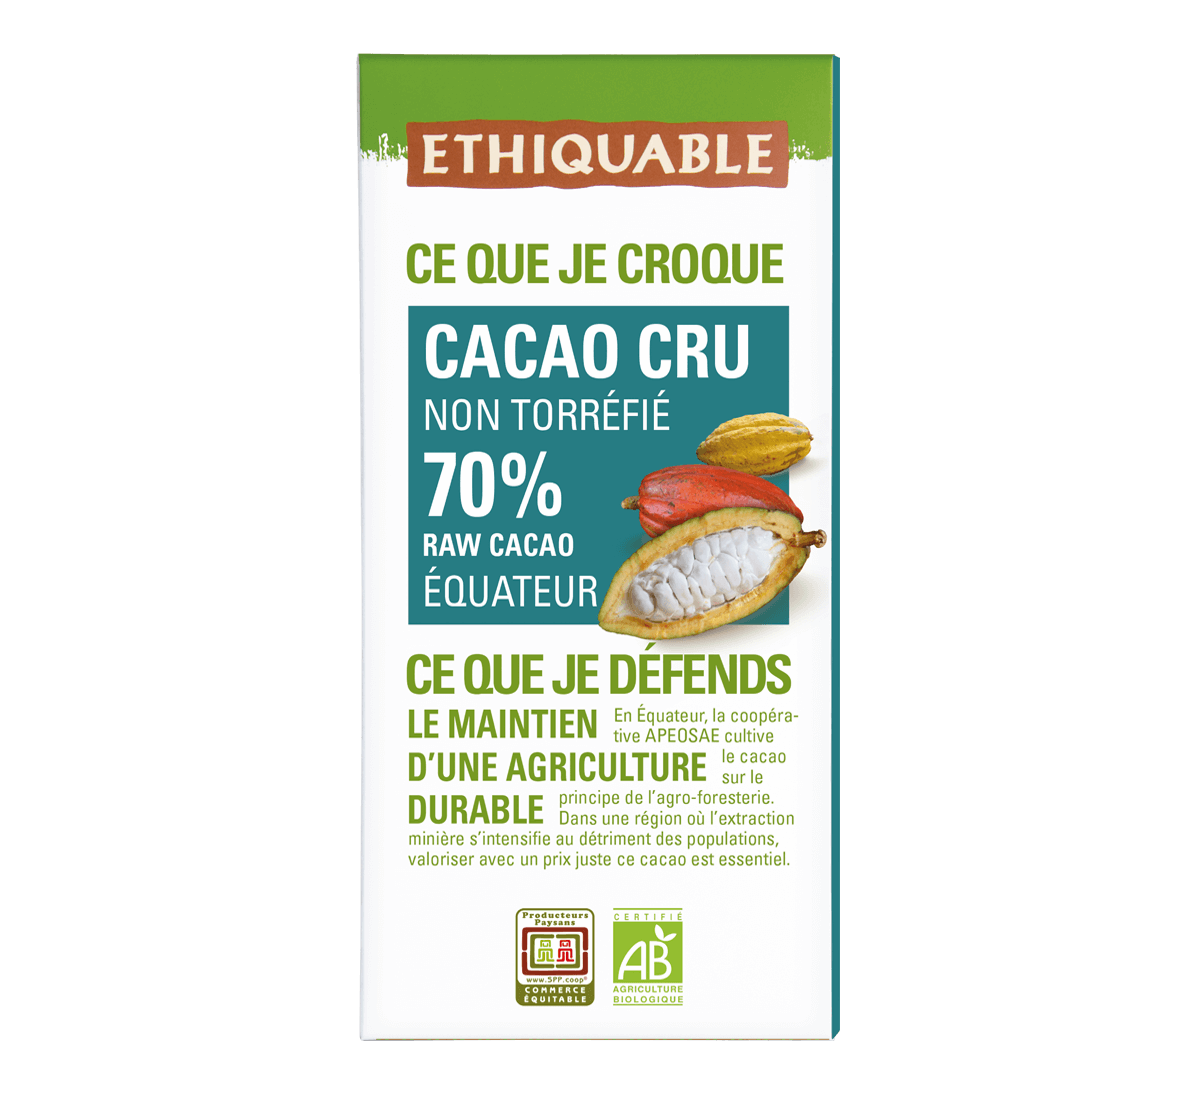 Ethiquable - Cacao cru bio non torréfié 70% de cacao d'Equateur issu du Commerce équitable